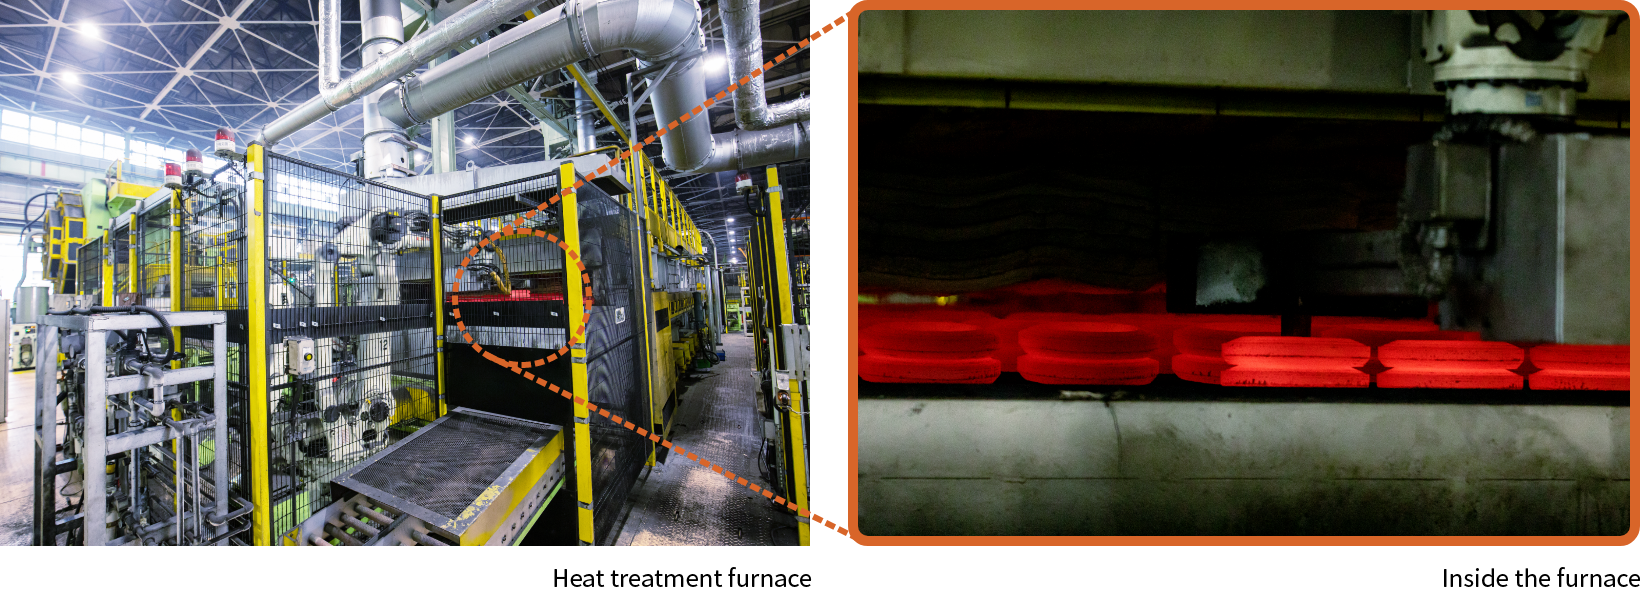 Heat treatment furnace / Inside the furnace